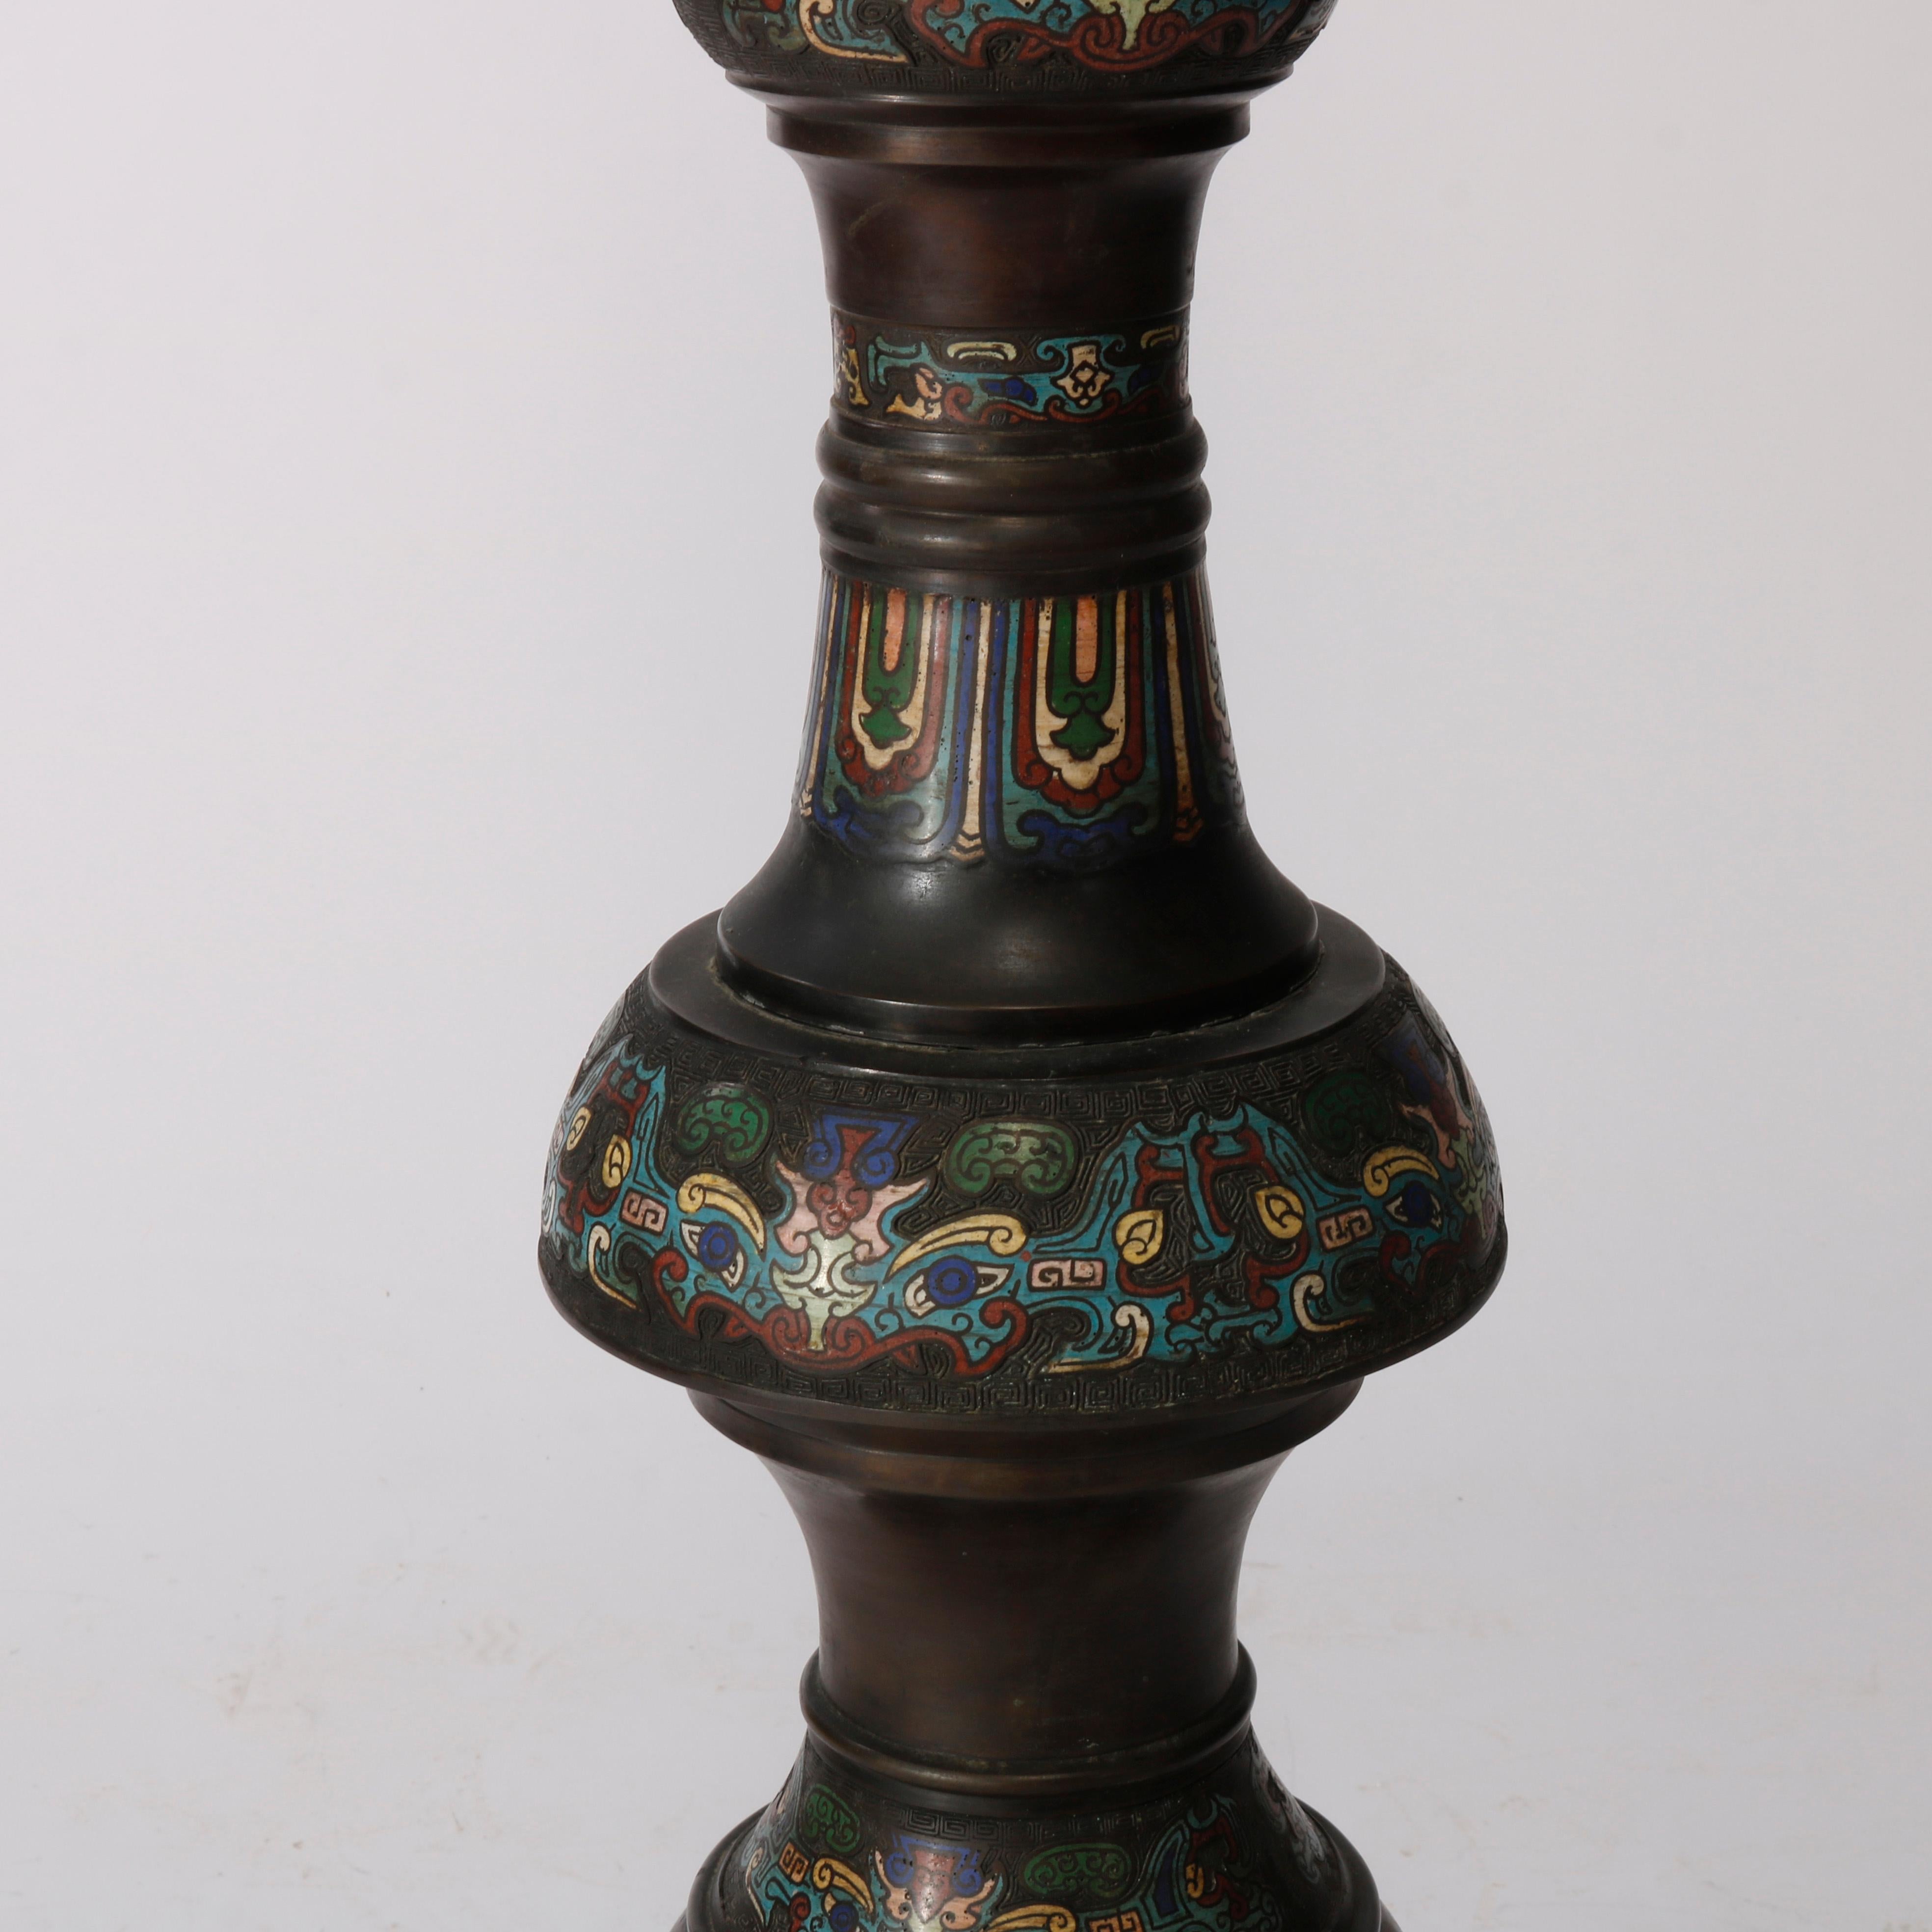 Champlevé Rare Antique Chinese Bronze & Cloisonne Oil Floor Lamp, Dragon Motif, c1890